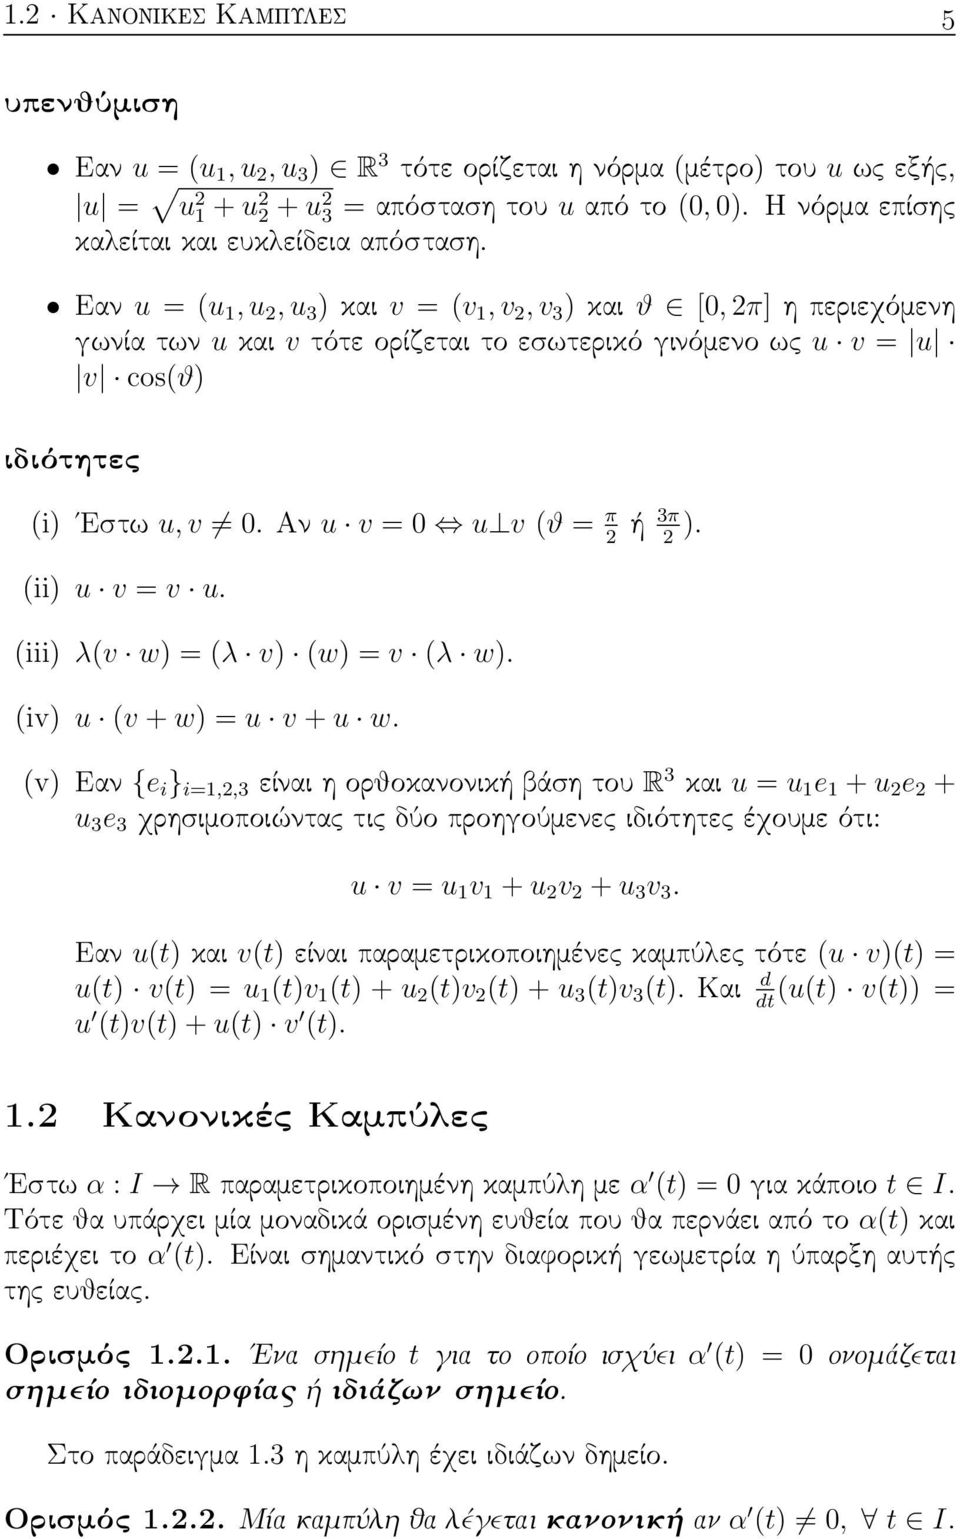 Εαν u = (u 1, u 2, u 3 ) και v = (v 1, v 2, v 3 ) και ϑ [0, 2π] η περιεχόμενη γωνία των u και v τότε ορίζεται το εσωτερικό γινόμενο ως u v = u v cos(ϑ) ιδιότητες (i) Εστω u, v 0.